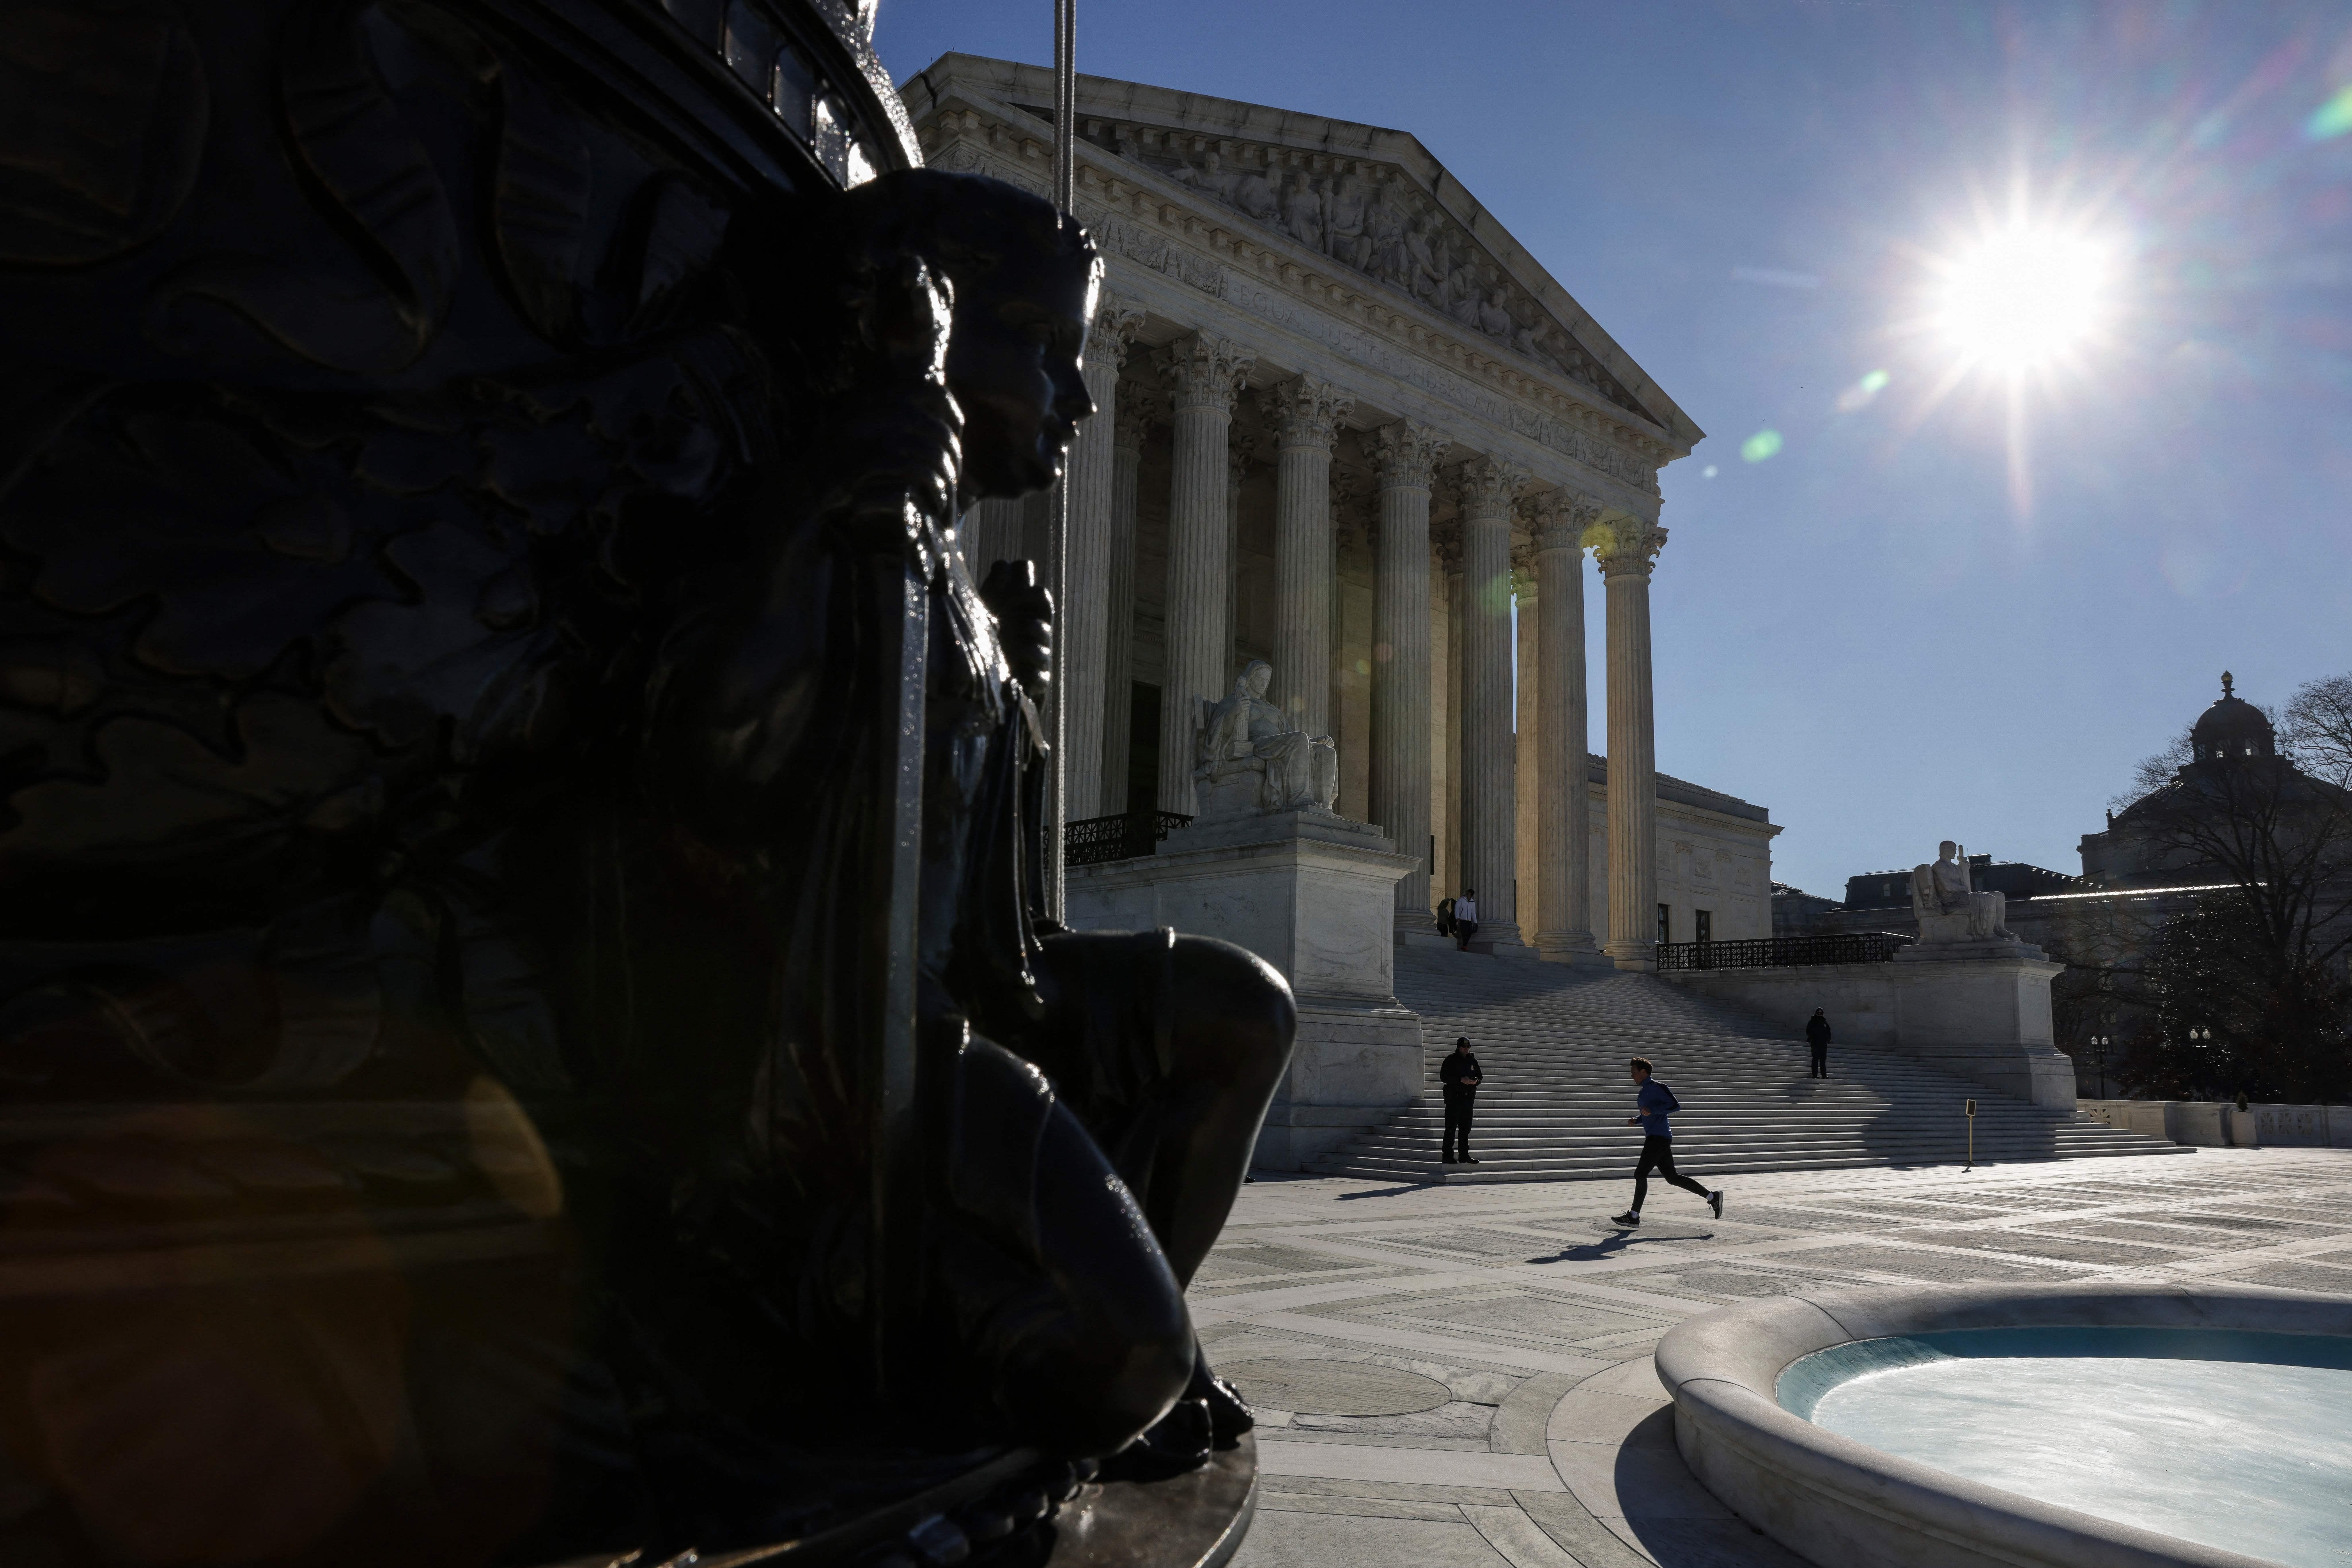 The Supreme Court plaza in the sun.